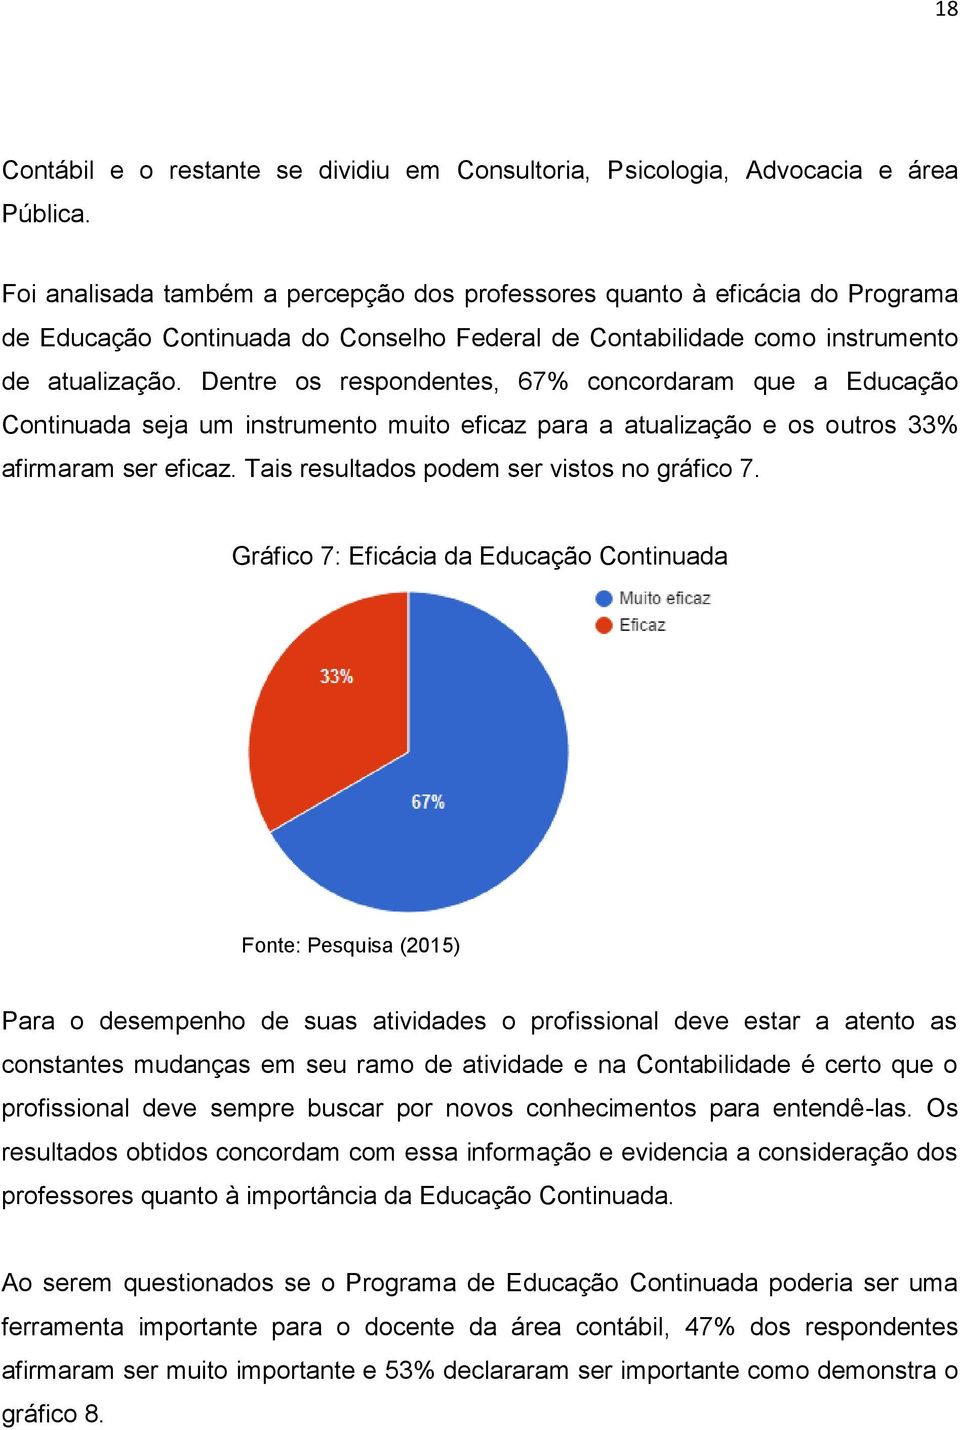 Dentre os respondentes, 67% concordaram que a Educação Continuada seja um instrumento muito eficaz para a atualização e os outros 33% afirmaram ser eficaz.